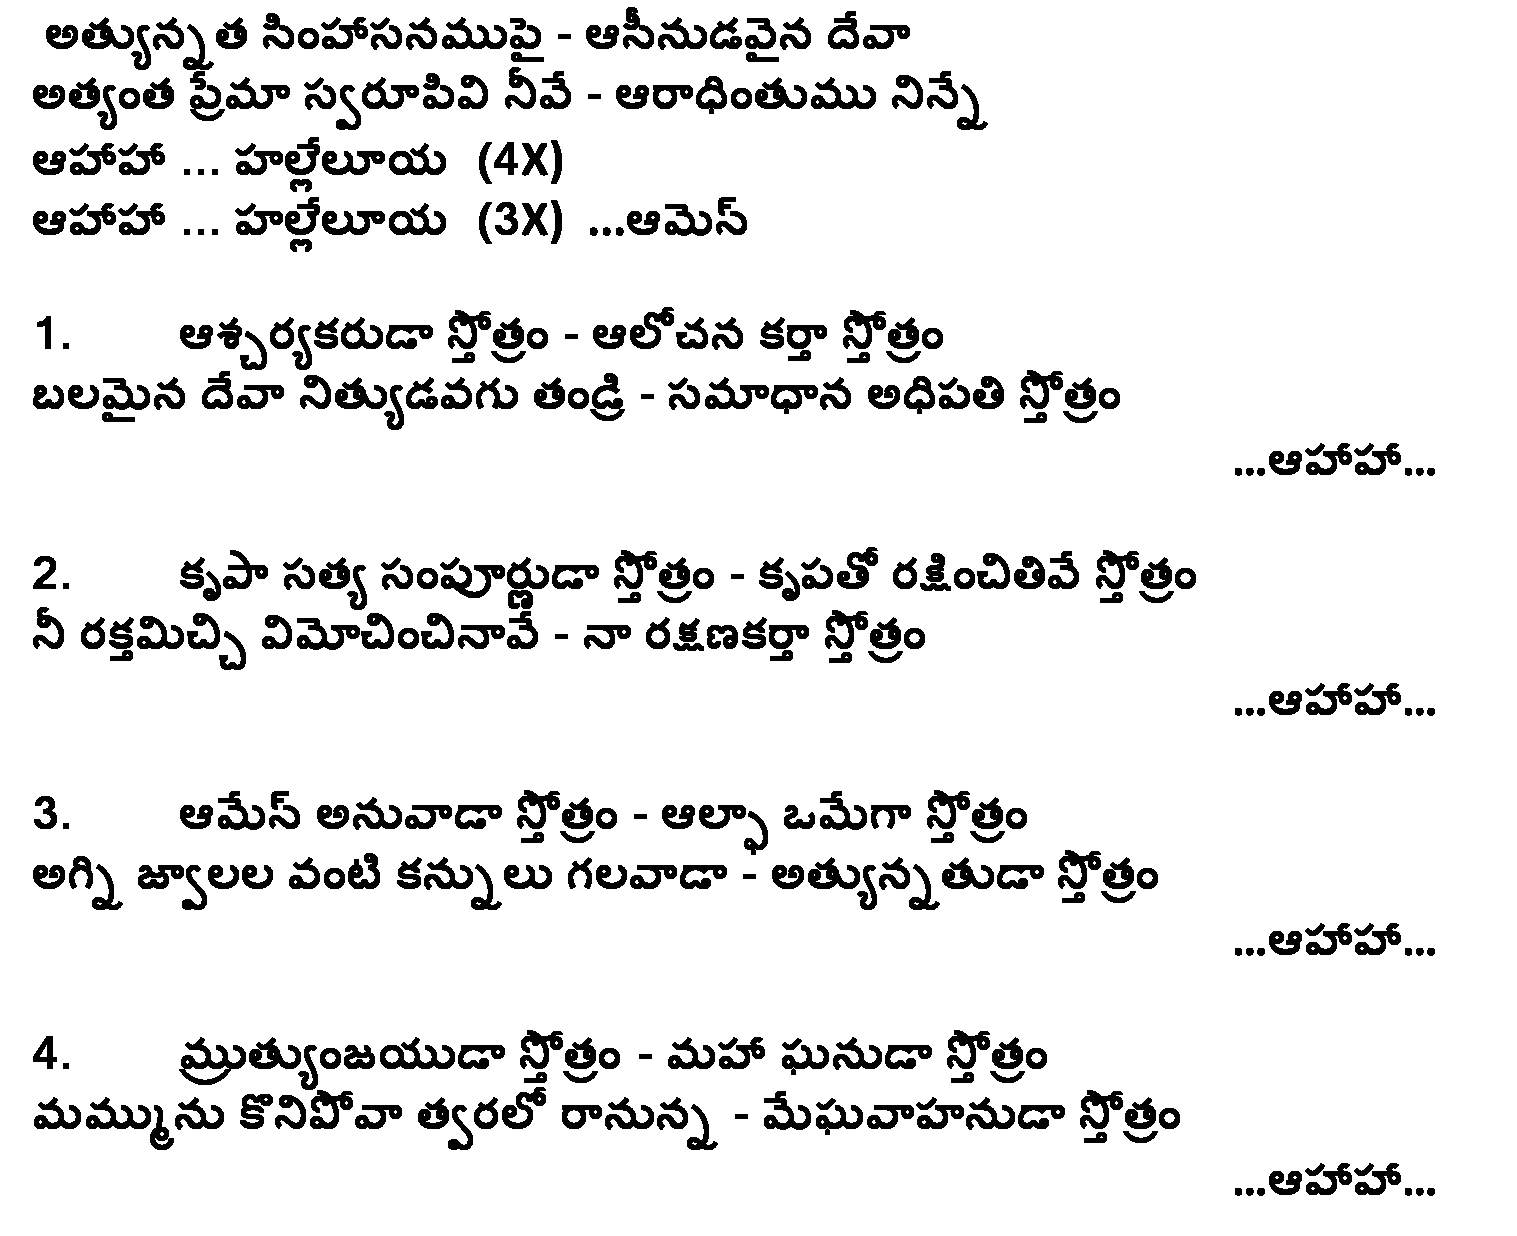 Athyunnatha simhasanamupai lyrics in telugu